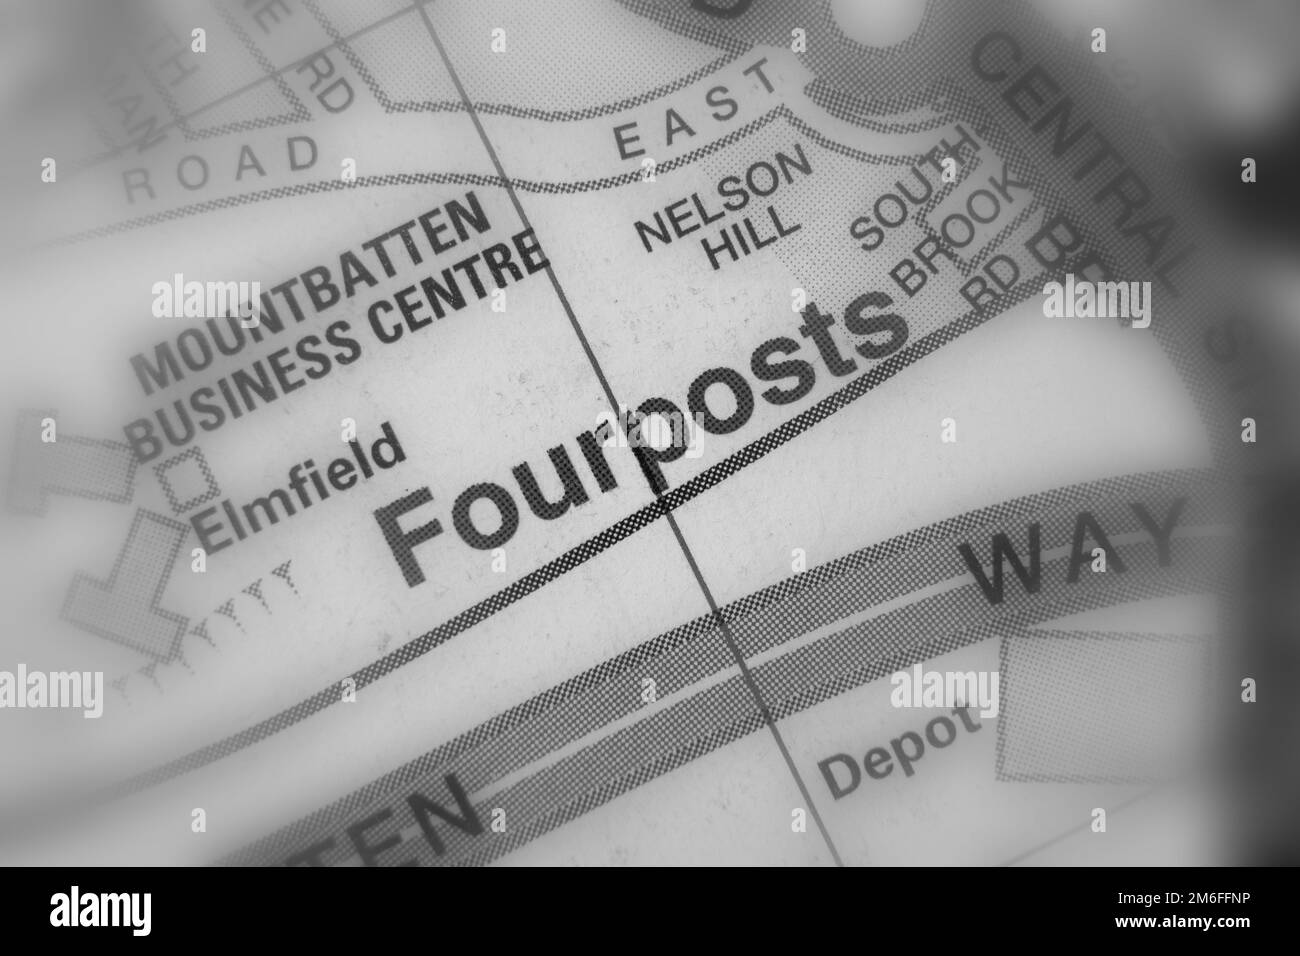 Fourposts Distrito de la ciudad portuaria de Southampton, Hampshire, Reino Unido atlas mapa nombre de la ciudad - blanco y negro tilf-shift Foto de stock